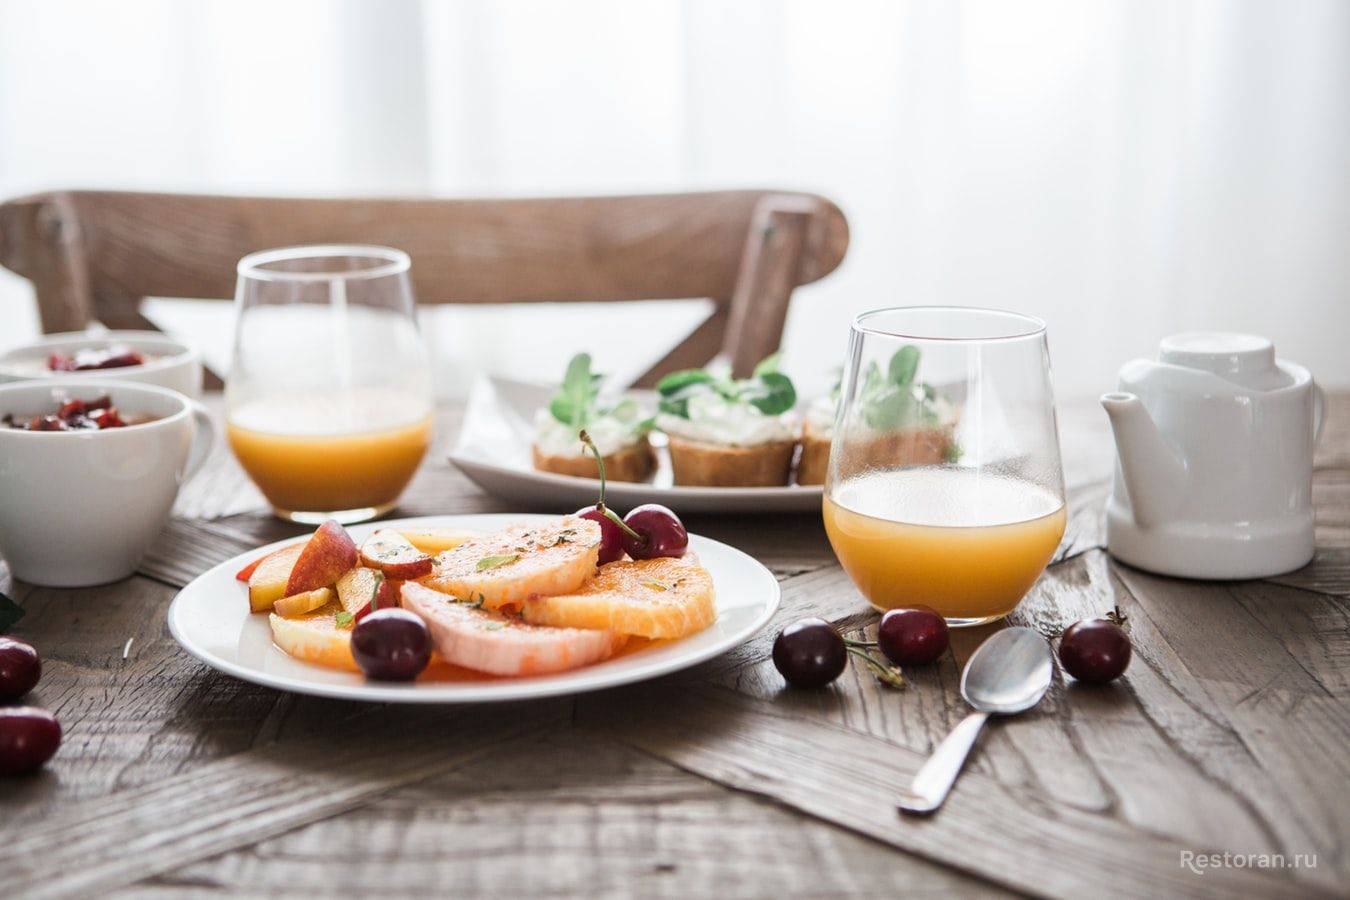 Что приготовить на завтрак в пост / 20 простых рецептов – статья из рубрики "как готовить" на food.ru